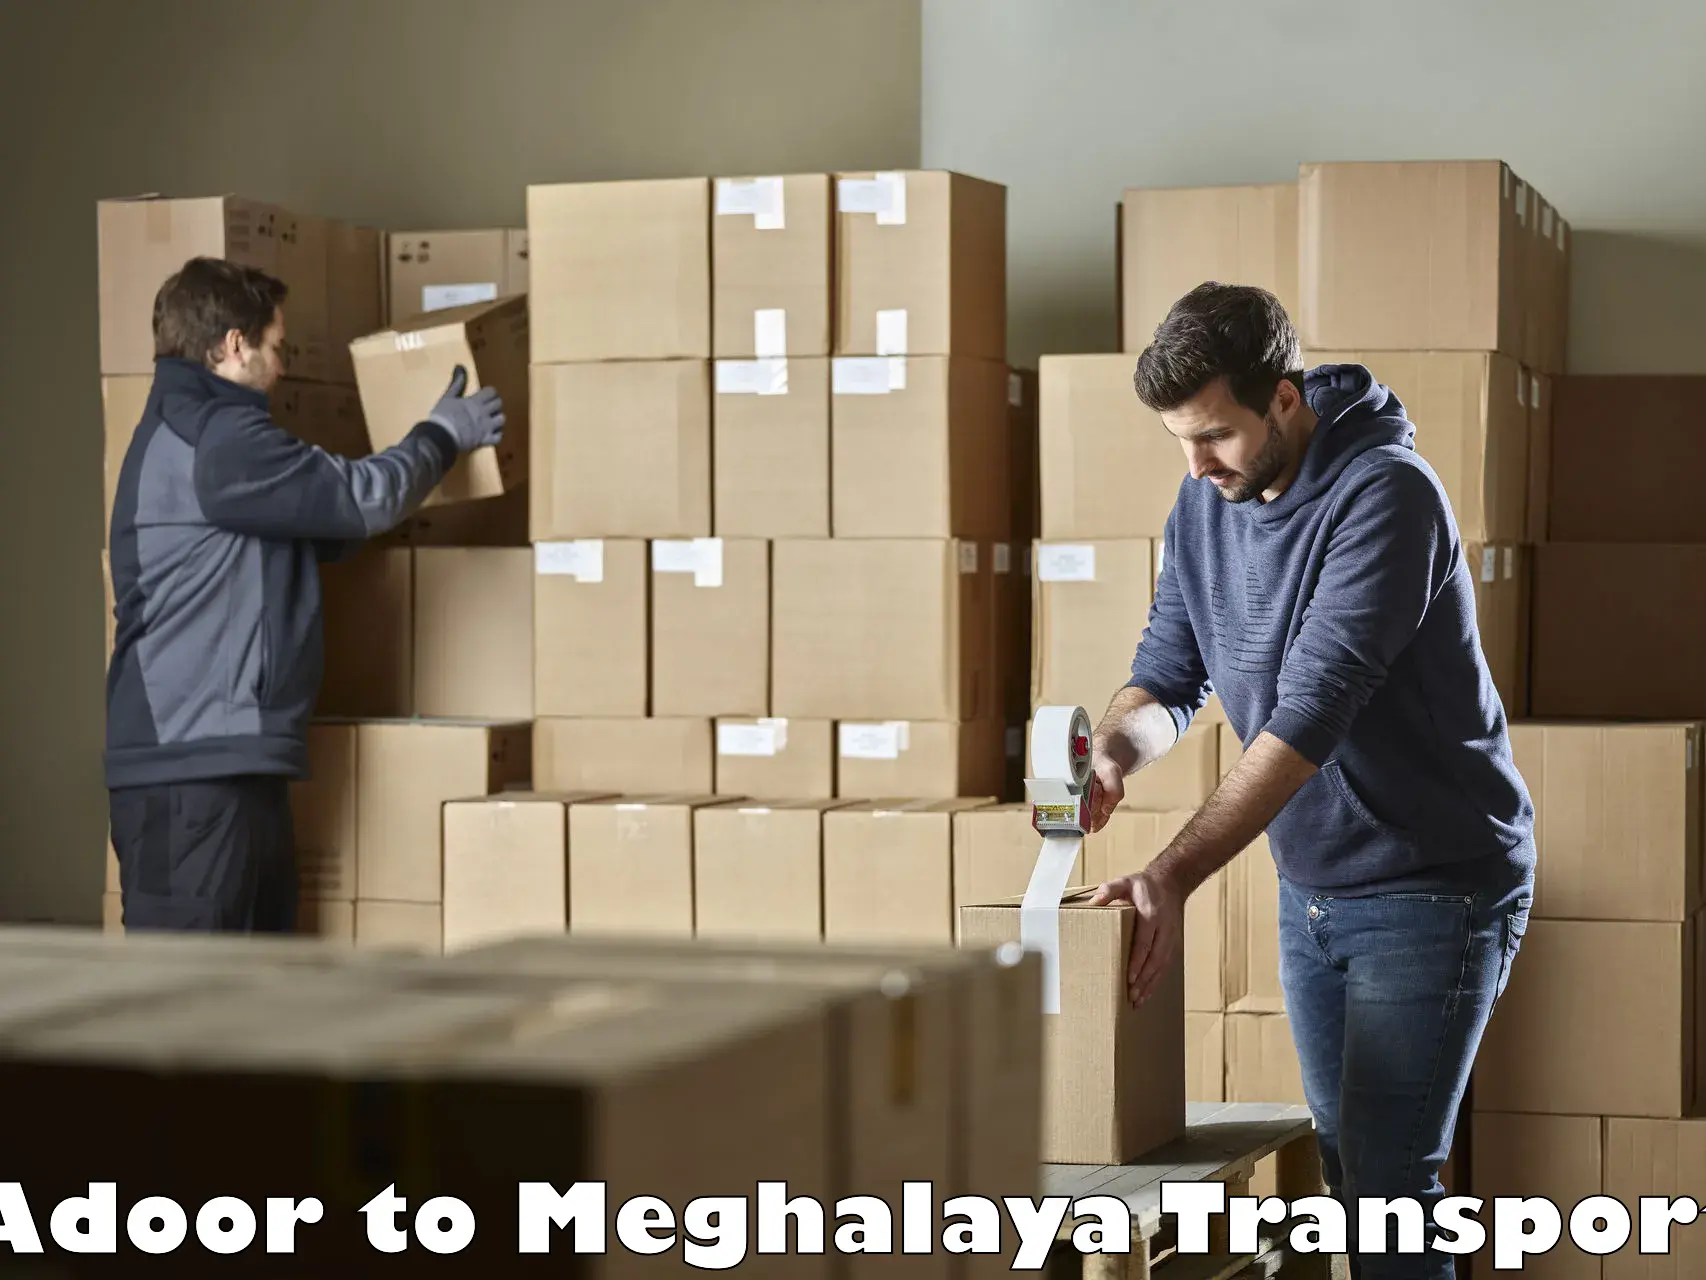 Online transport service Adoor to Meghalaya